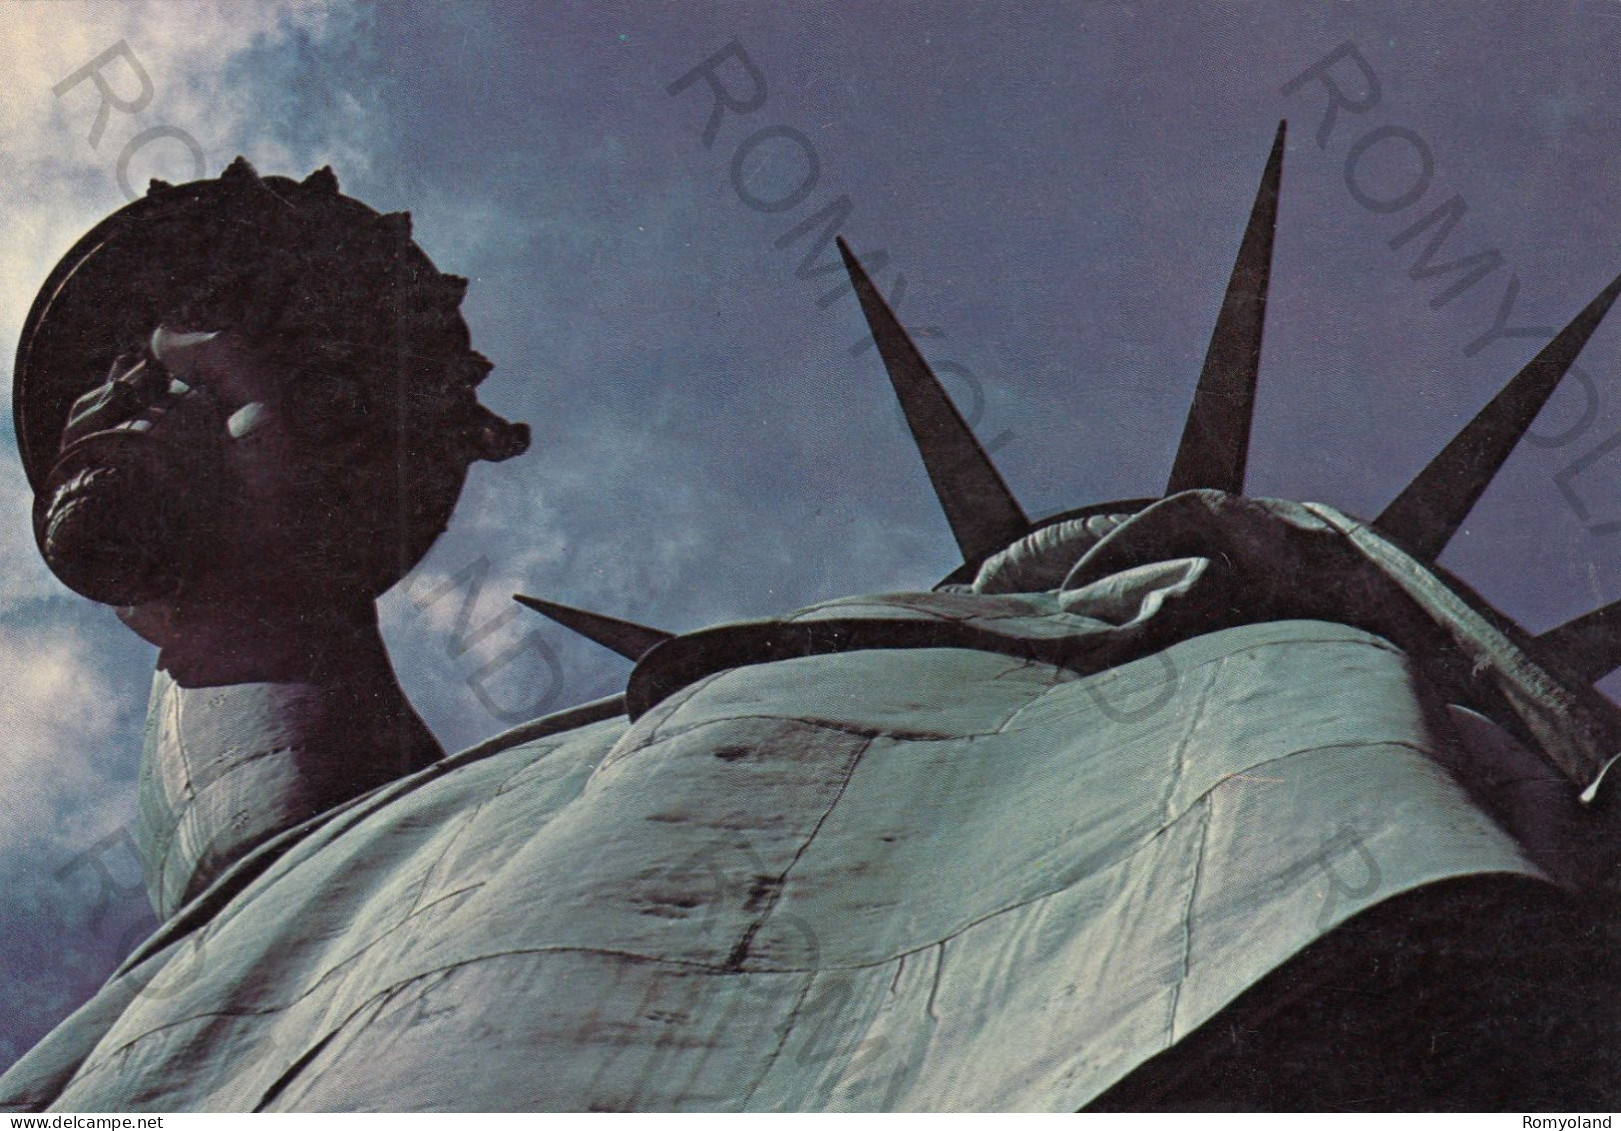 CARTOLINA  B22 NEW YORK CITY,NEW YORK,STATI UNITI-MS.LIBERTY-NON VIAGGIATA - Statue Of Liberty